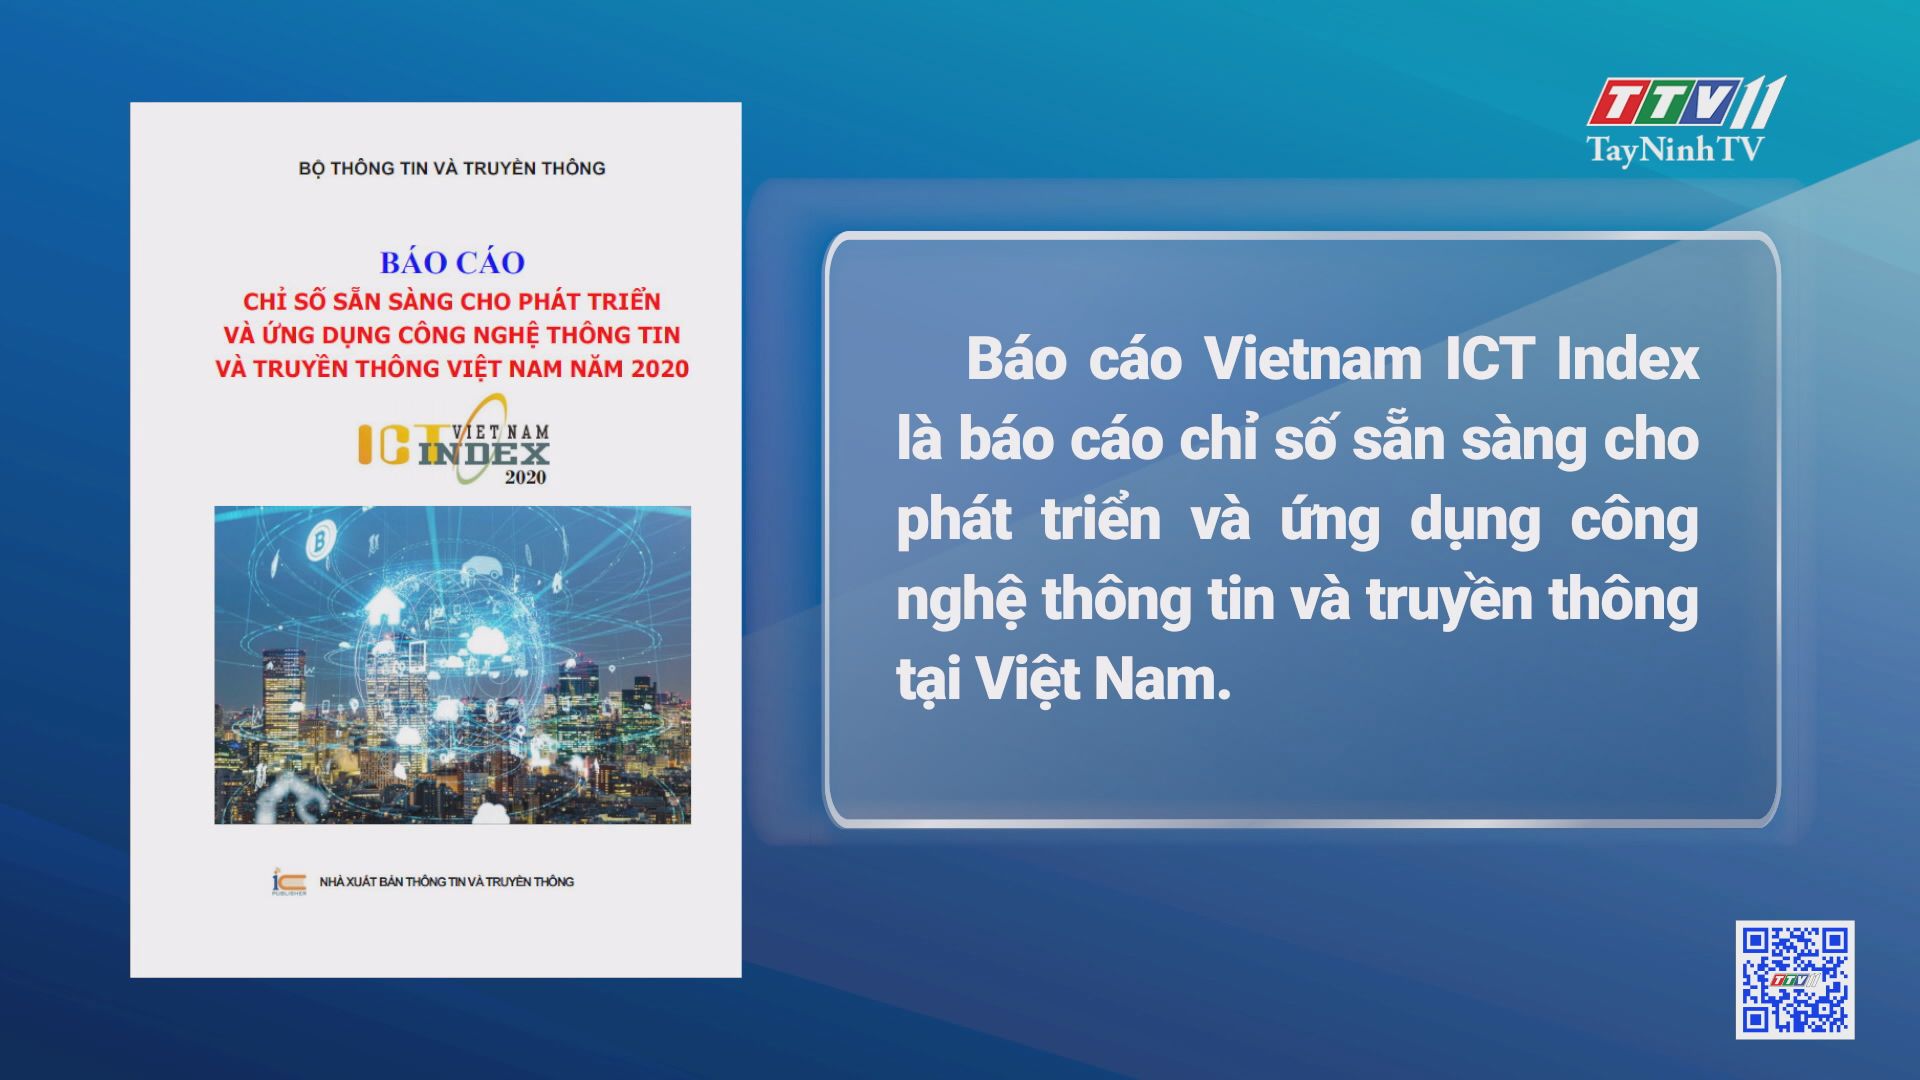 Báo cáo VietNam ICT Index là gì? | CẢI CÁCH HÀNH CHÍNH | TayNinhTV